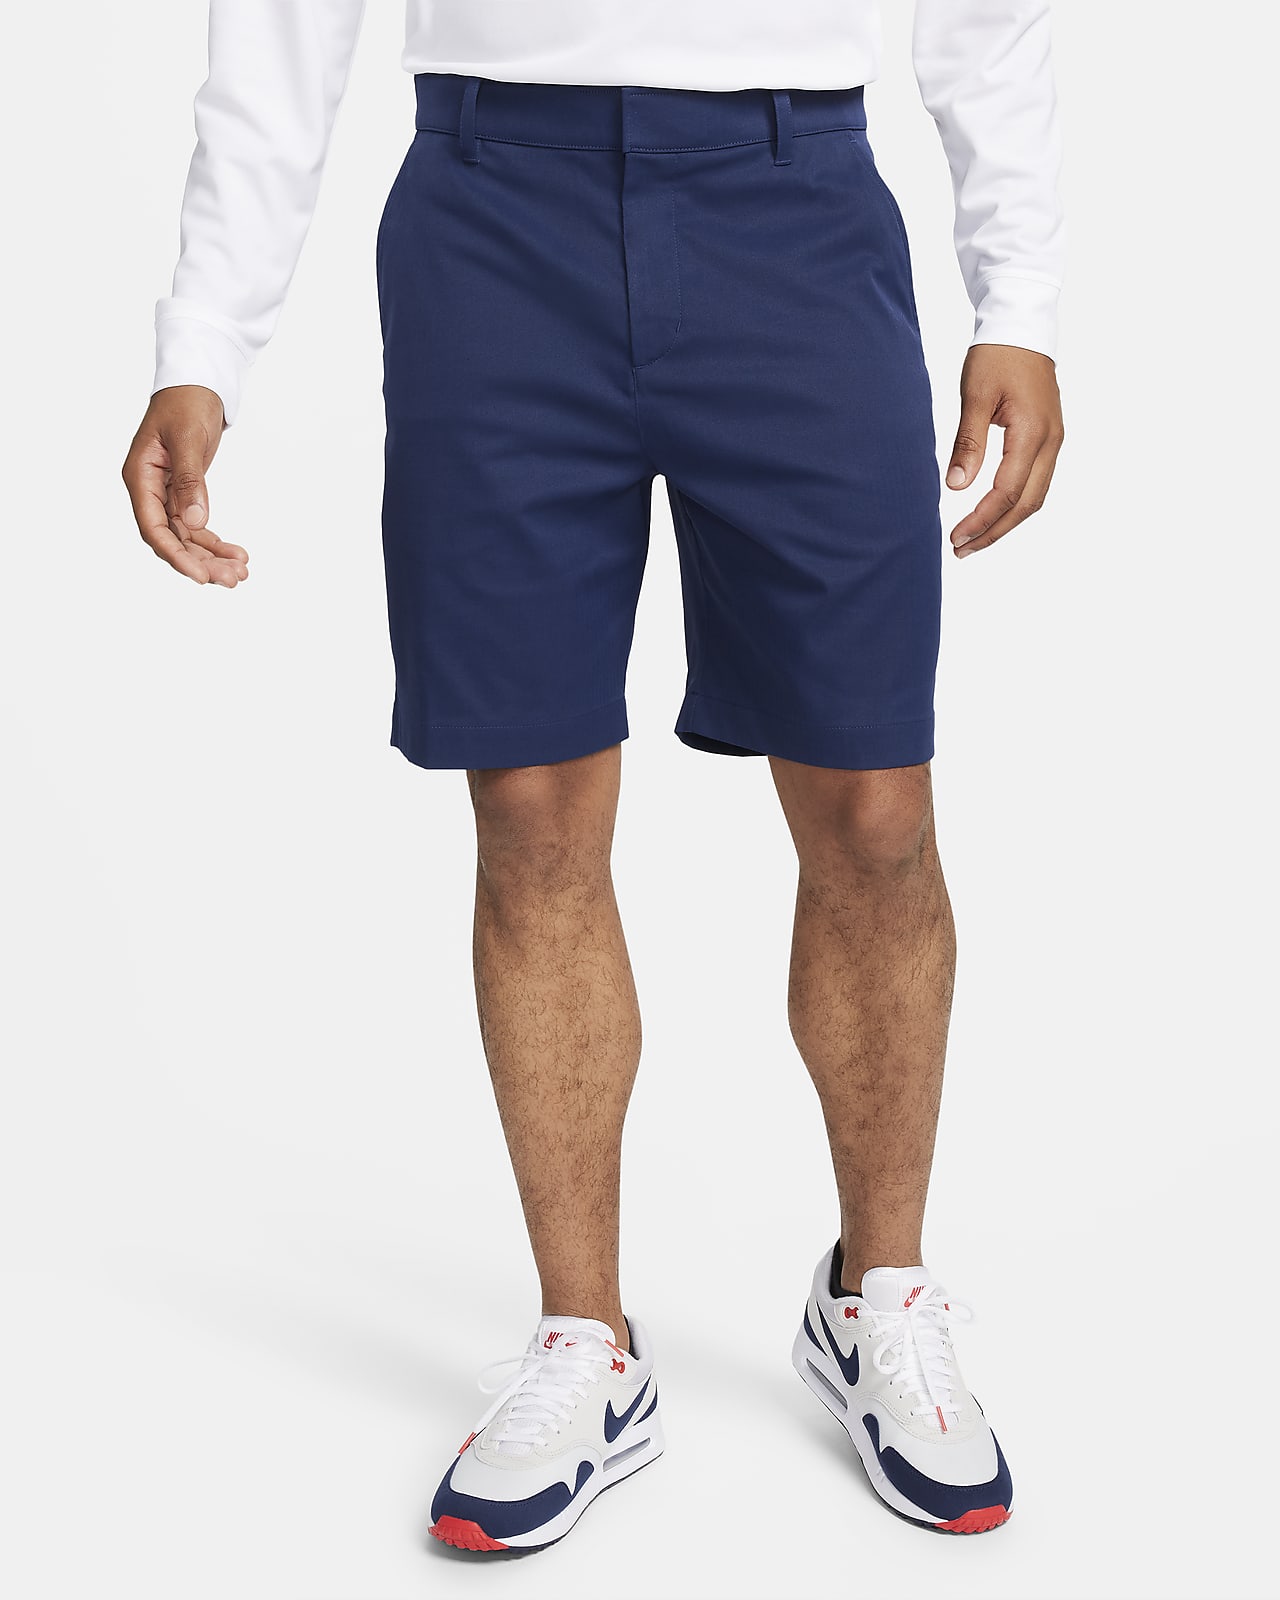 Nike Tour Chino 20 cm-es férfi golfrövidnadrág